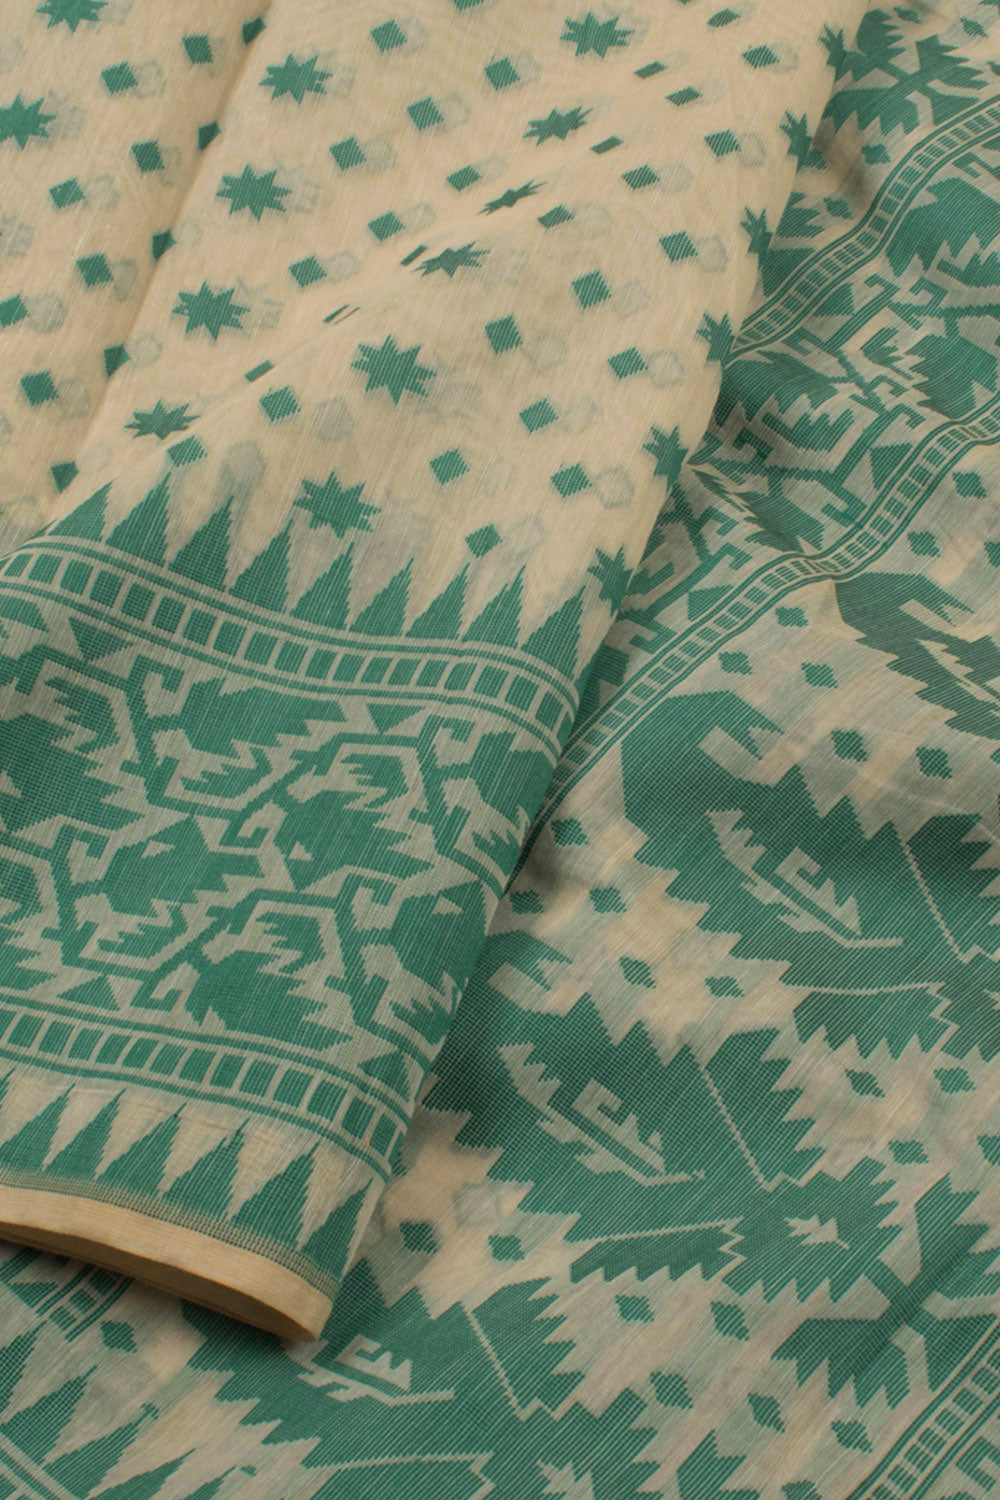 Handloom Dhakai Style Cotton Saree 10057788